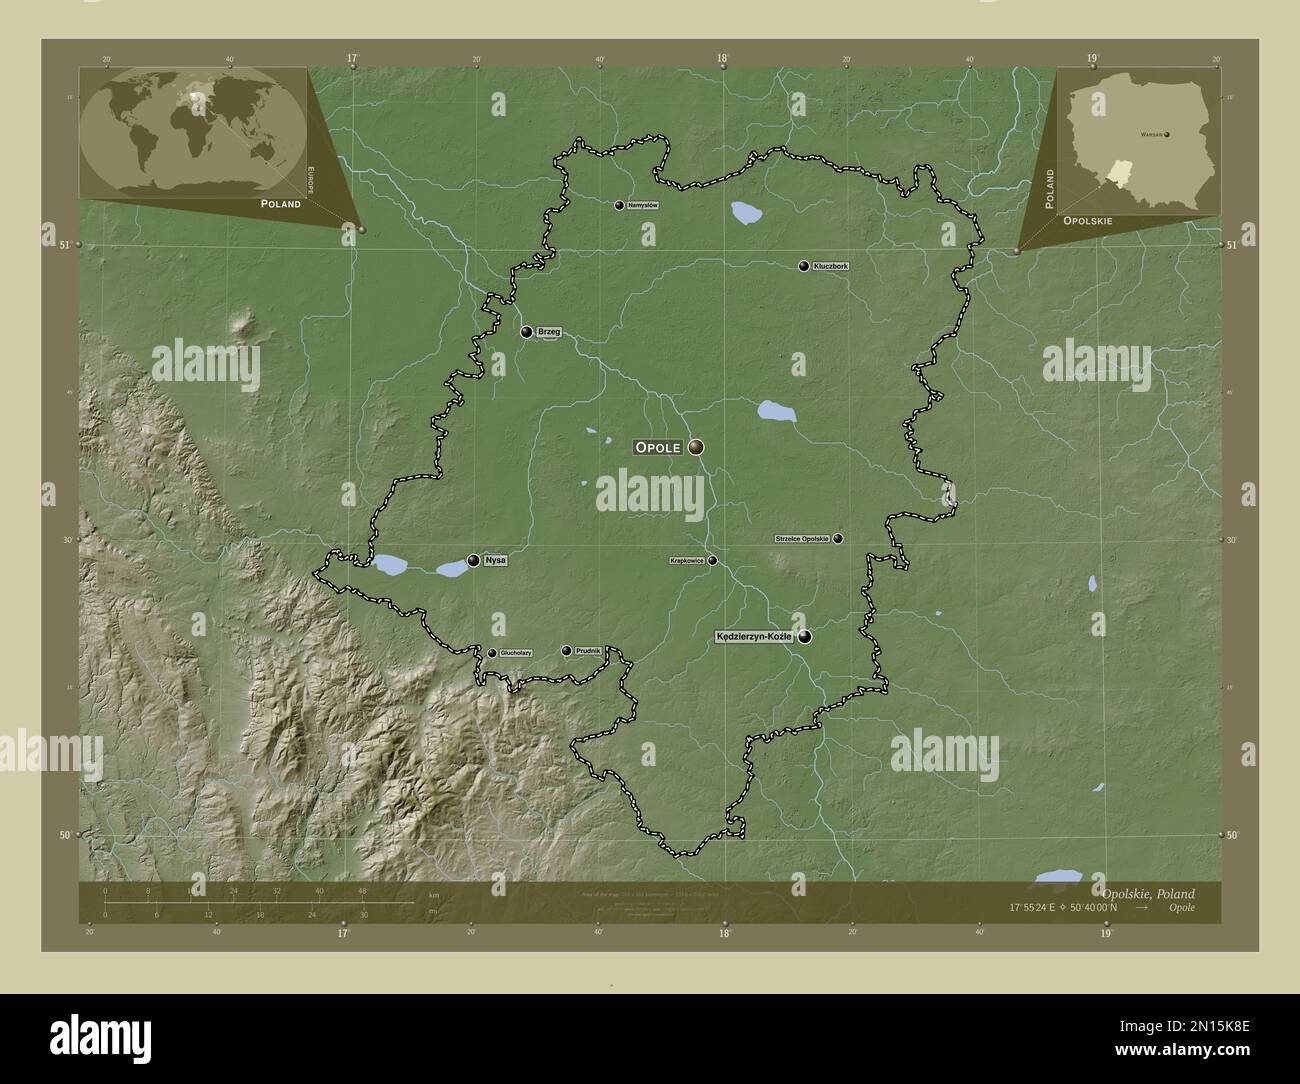 Opolskie, voïvodie|province de Pologne. Carte d'altitude colorée en style wiki avec lacs et rivières. Lieux et noms des principales villes de la région Banque D'Images